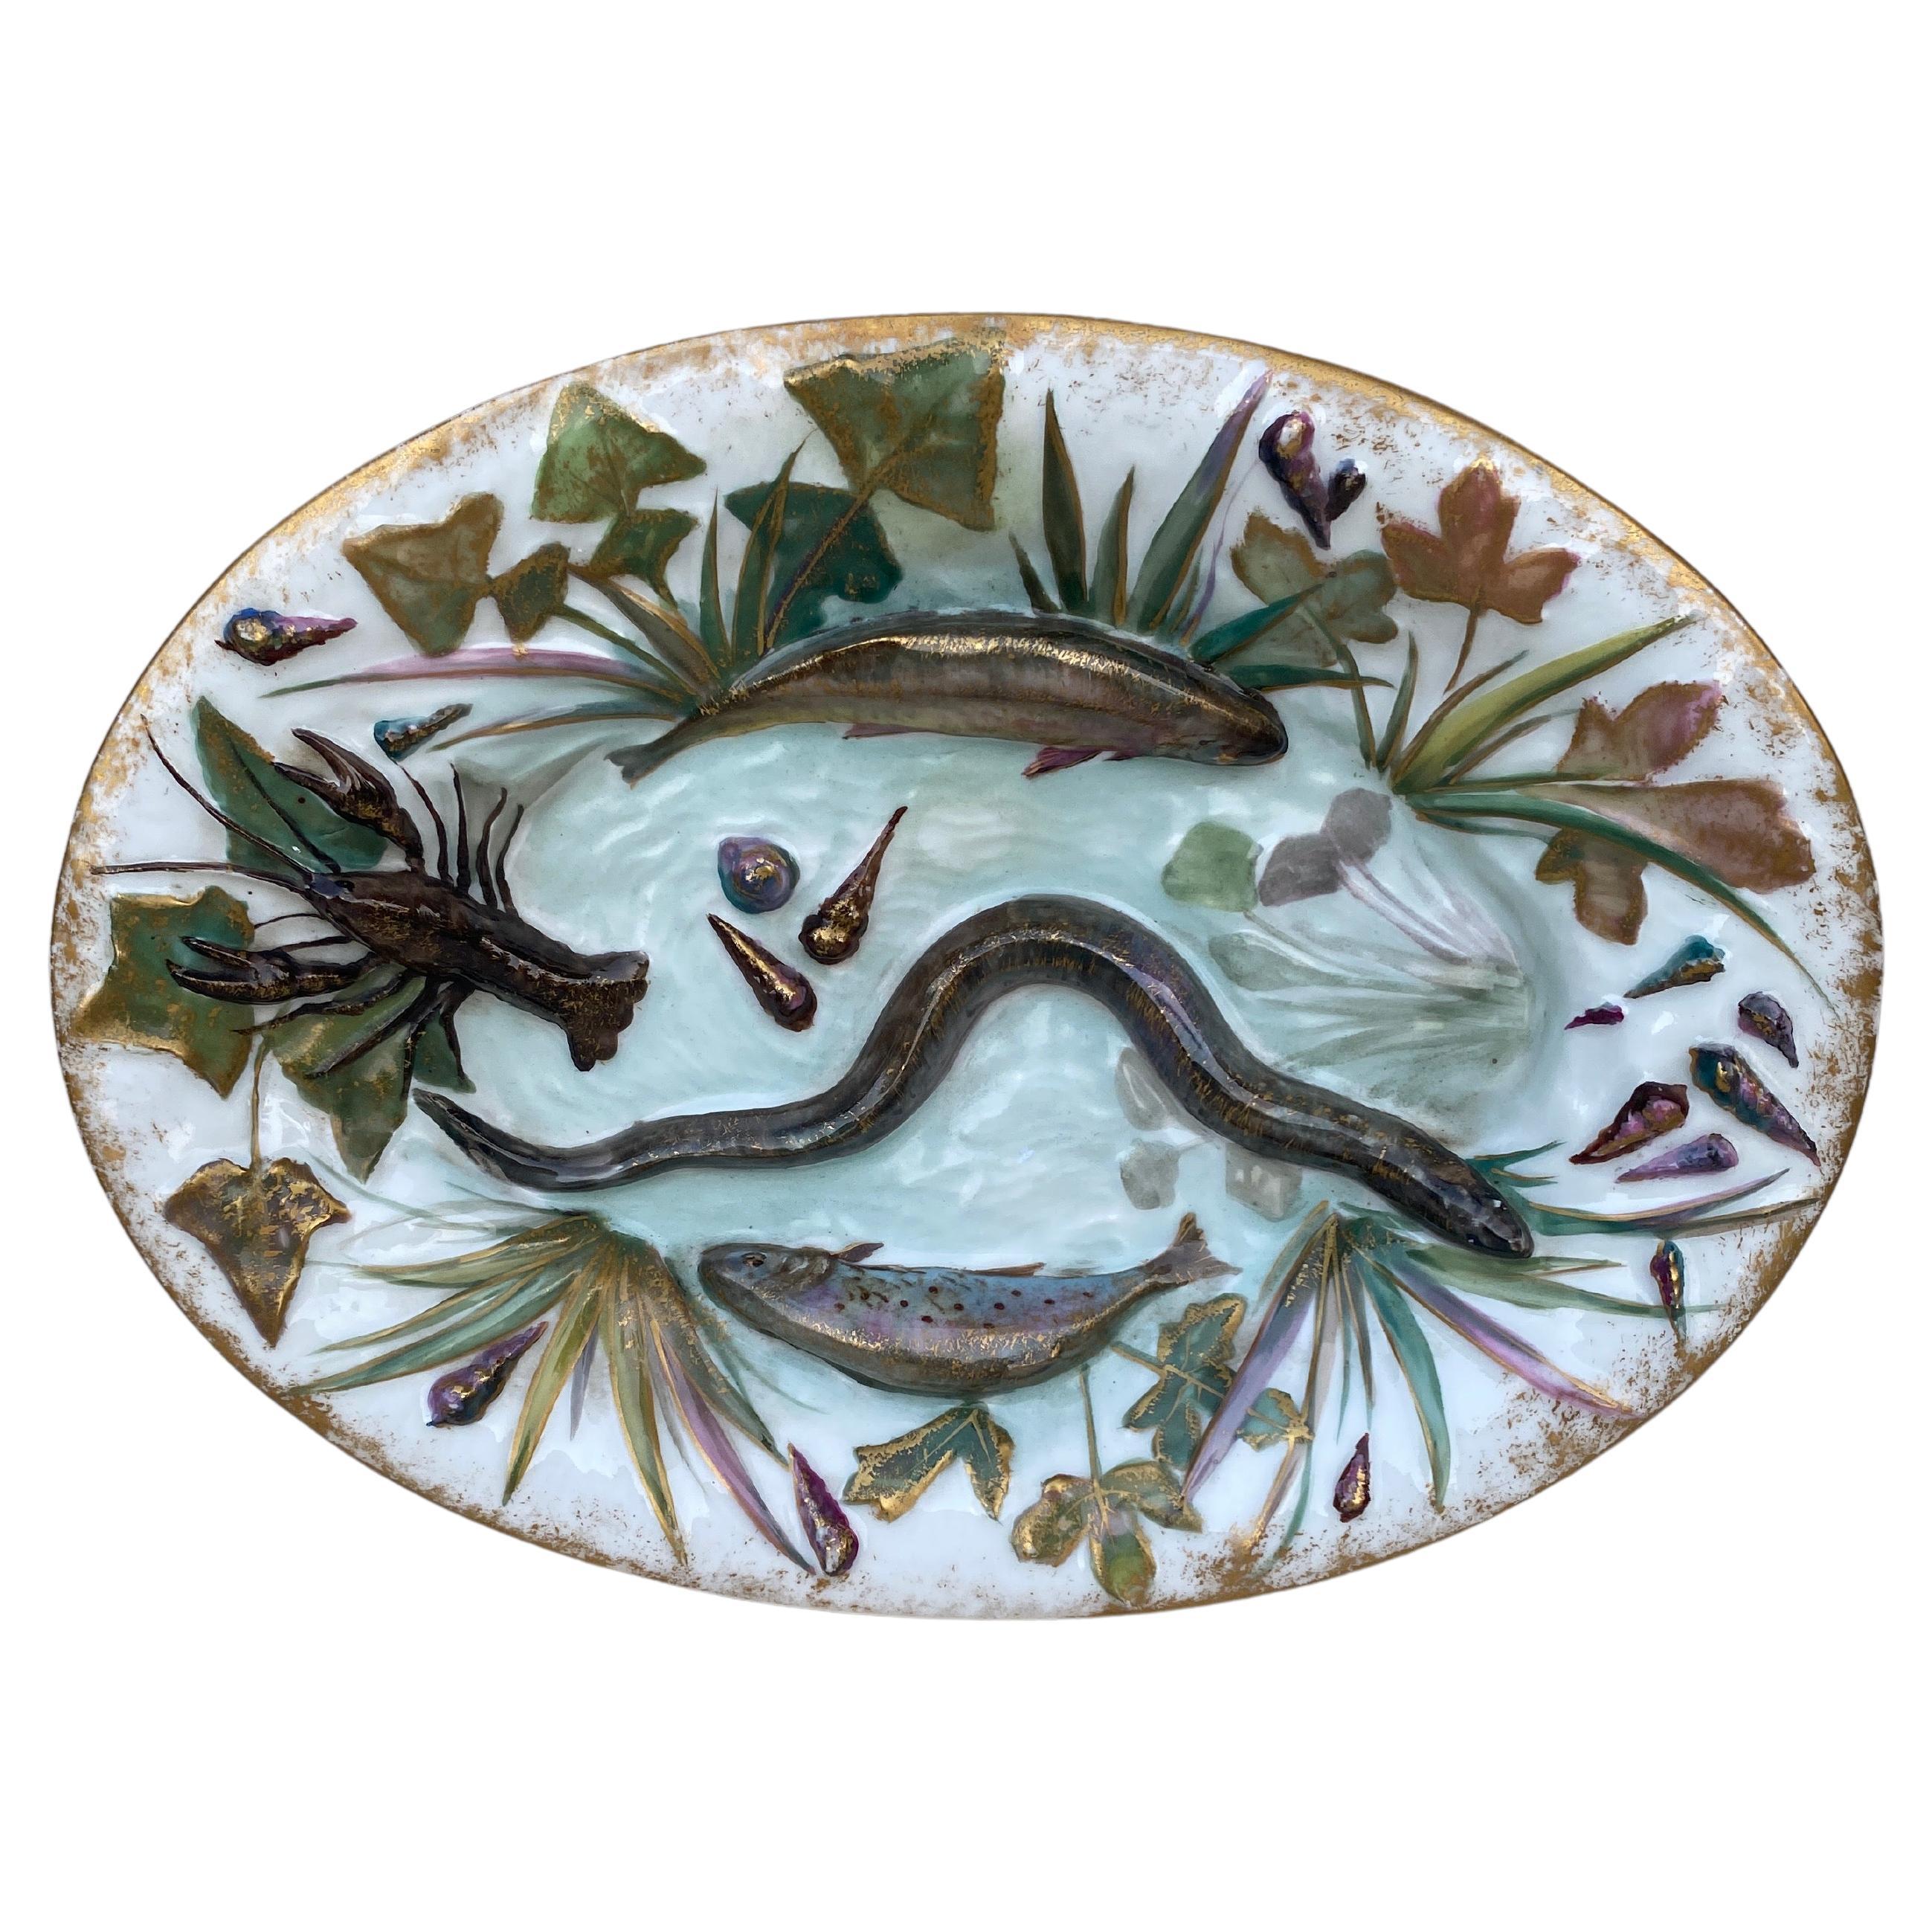 Assiette murale en porcelaine de Palissy avec poissons du 19ème siècle